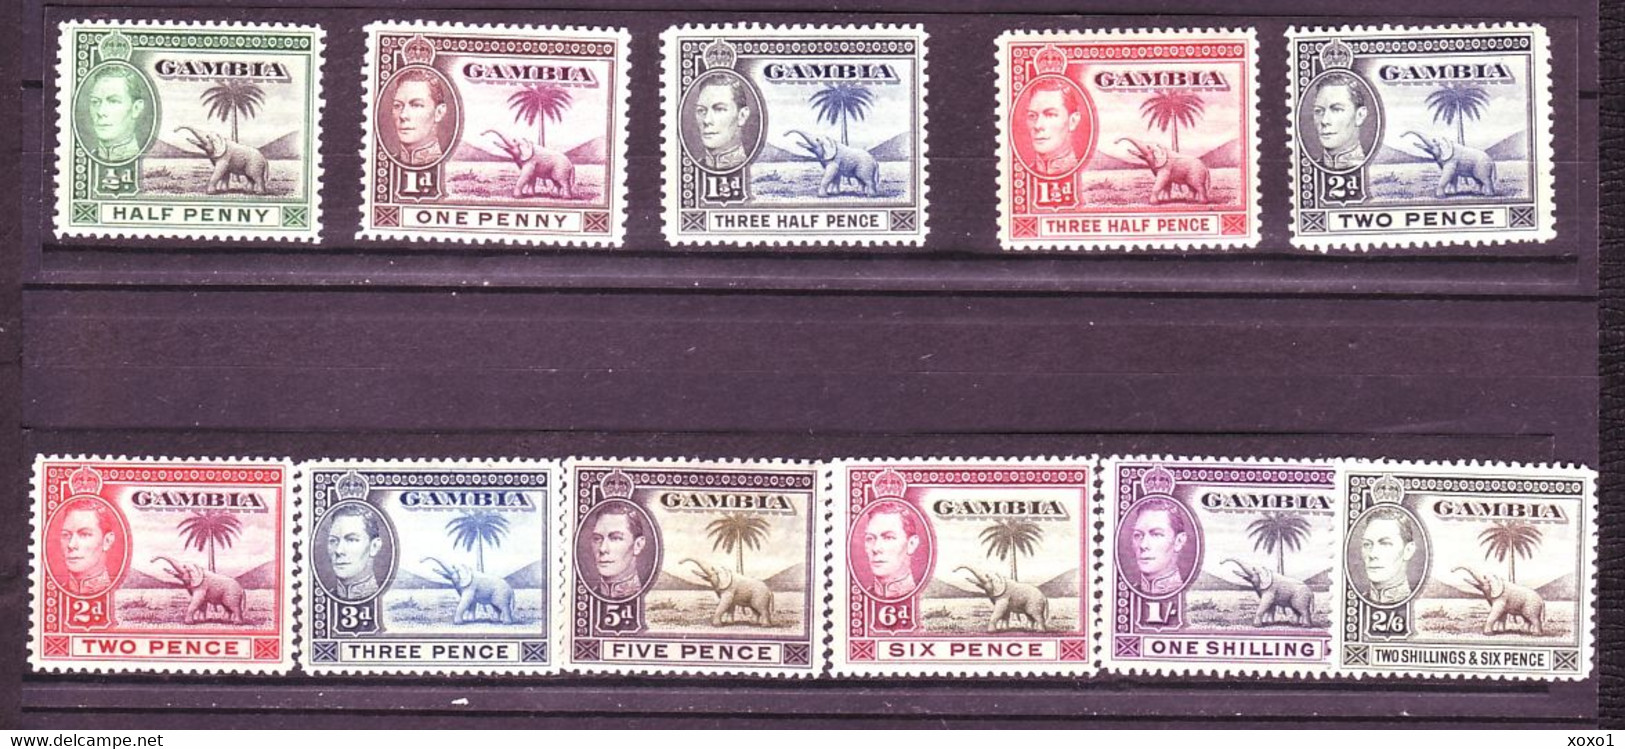 Gambia 1938  MiNr. 123 - 133  Animals King George VI Elephant 11v  MLH*  23.00 € - Gambie (...-1964)